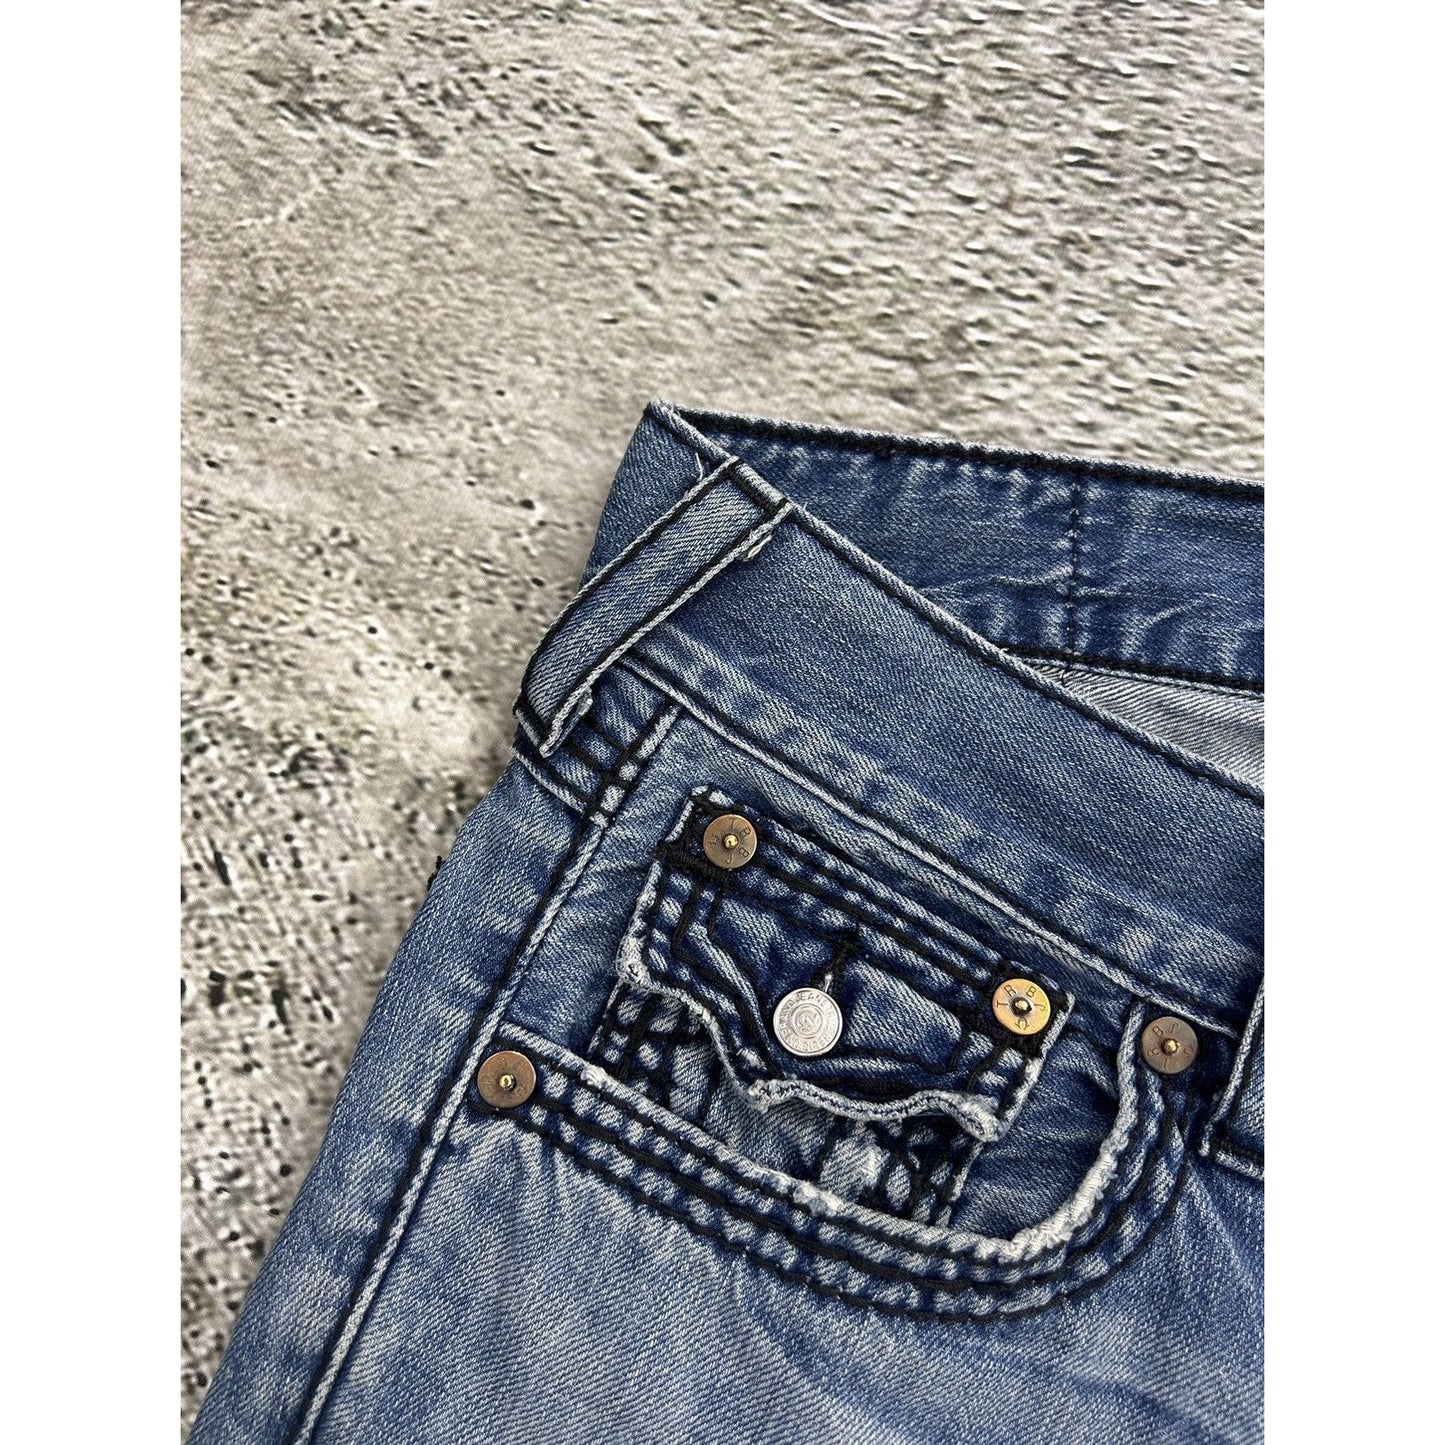 True Religion baby blue jeans black stitching Y2K